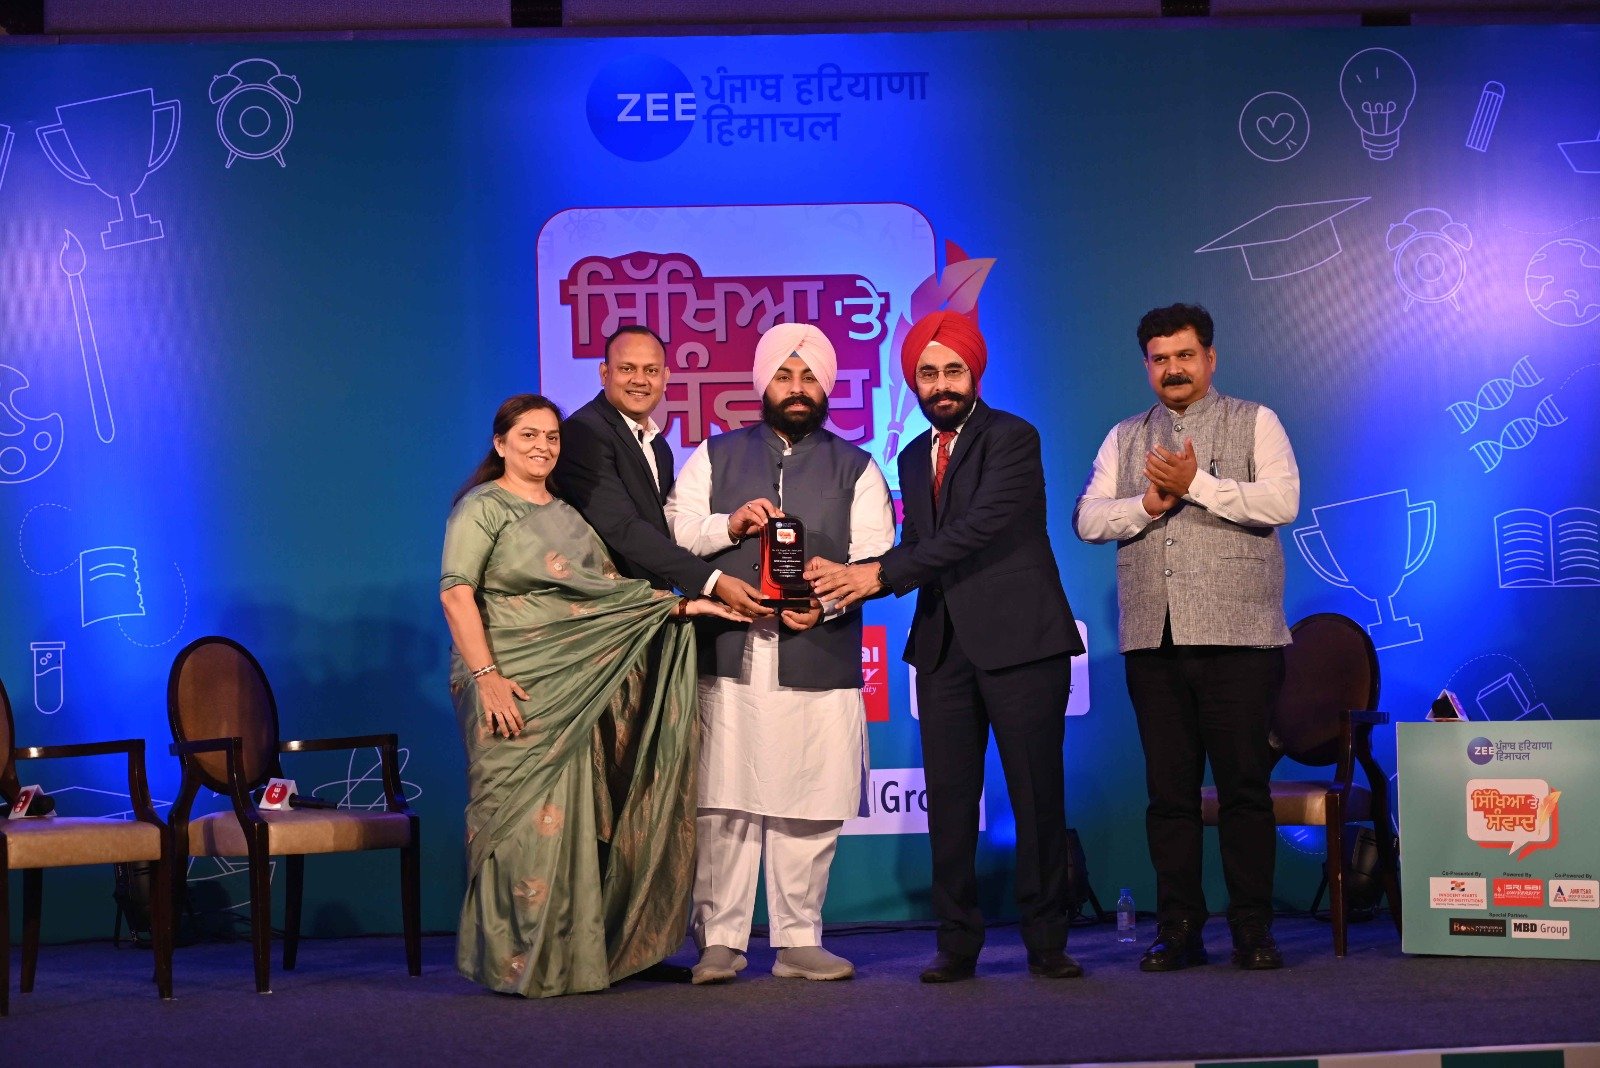 NFCI wins ZeePHH News Award